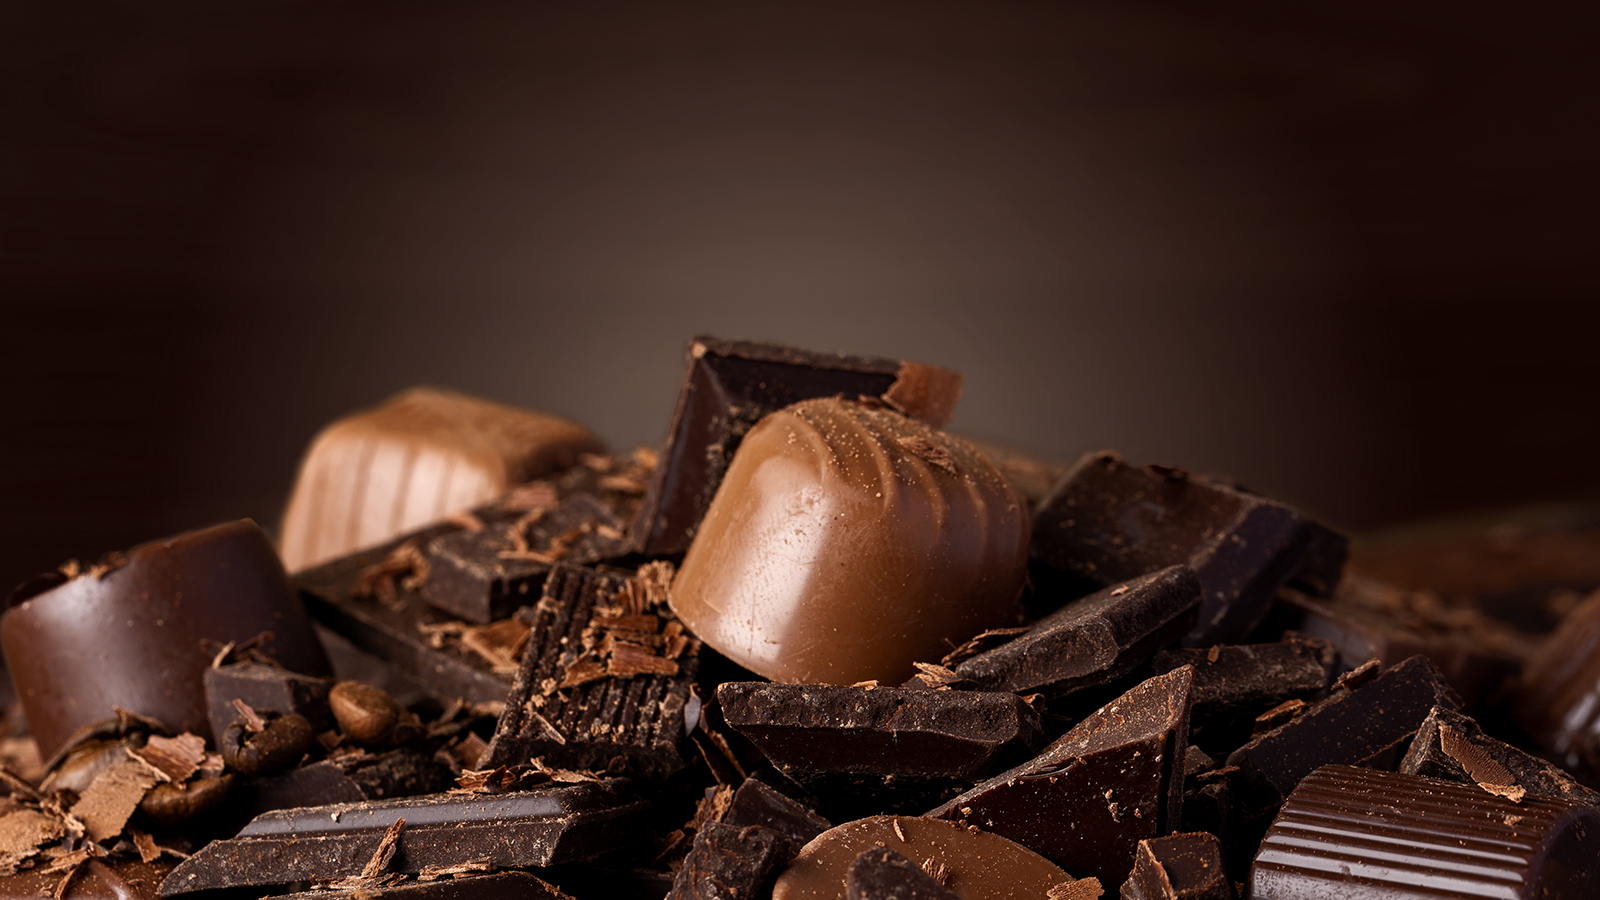 Atelier Çikolata Chocolate  | Çikolatalar, Çikolata ve Kakaolu Tatlılar, Çikolatalar, Dolgulu Çikolatalar, Çikolatalar, Barlar, Dolgulu Çikolatalar, Tatlılar, Sütlü, Kakaolu ve Çikolatalı, Çikolatalı Barlar, Çikolata, Sürmeli Çikolata, Çikolata ve Kakaolu Tatlılar, Çikolata Fabrikası, Şekersiz Çikolata, En Kaliteli Çikolata , Bitter Çikolata, Fındık Ezmesi, Çikolatalı Ezme, Belçika Çikolatası, Keto Çikolata, , Spesiyal Çikolatalar, Bar Çikolatalar, Lokum Grubu, Hediyelik Ürünler, Fıstıklı Kalp Çikolata, Kaşık Çikolata, Fıstıklı Çikolata, Fındıklı Çikolata, Fıstıklı Bar Çikolata, Fındıklı Bar Çikolata, Bitter Bar Çikolata, Sütlü Bar Çikolata, Madleno Fıstıklı Çikolata, Madleno Fıstıklı Çikolata, Madleno Fıstıklı Çikolata, 1926 Fıstıklı Çikolata, 1926 Fındıklı Çikolata, Portakal Aromalı Çikolata Kaplı Lokum, Bitter Çikolata Kaplı Lokum, Çikolata Kaplı Lokum, Portakal Aromalı Fıstıklı Bitter Çikolata, Portakal Aromalı Fıstıklı Sütlü Çikolata, Lamina S Özel Çikolata, Drajo Özel Çikolata, Trip Fındıklı Özel Çikolata, Lamina Özel Çikolata, Molto Özel Çikolata, Bonus Fıstıklı Çikolata, Bonus Fındıklı Çikolata, Muito Çikolata Dolgulu Draje, Papaya Fındıklı Çikolata, Papaya Fıstıklı Çikolata, Quatre S Draje ve Dolgulu Çikolata, Quatre Fıstıklı Beyaz Çikolatalı, Quatre Fıstıklı Beyaz Çikolatalı, Quatre Fındıklı Çikolata, Quatre Fıstıklı Çikolata, Batomi Milk Chocolate, Batomi Batomi Sütlü Çikolata, Batomi Fıstıklı Beyaz Çikolata, Batomi Fındıklı Çikolata, Batomi Fıstıklı Sütlü Çikolata, Rio Sütlü Çikolata, Rio Bitter Çikolata, Rio Beyaz Çikolata & Fıstık, Rio Fındıklı Sütlü Çikolata, Rio Fıstıklı Sütlü Çikolata